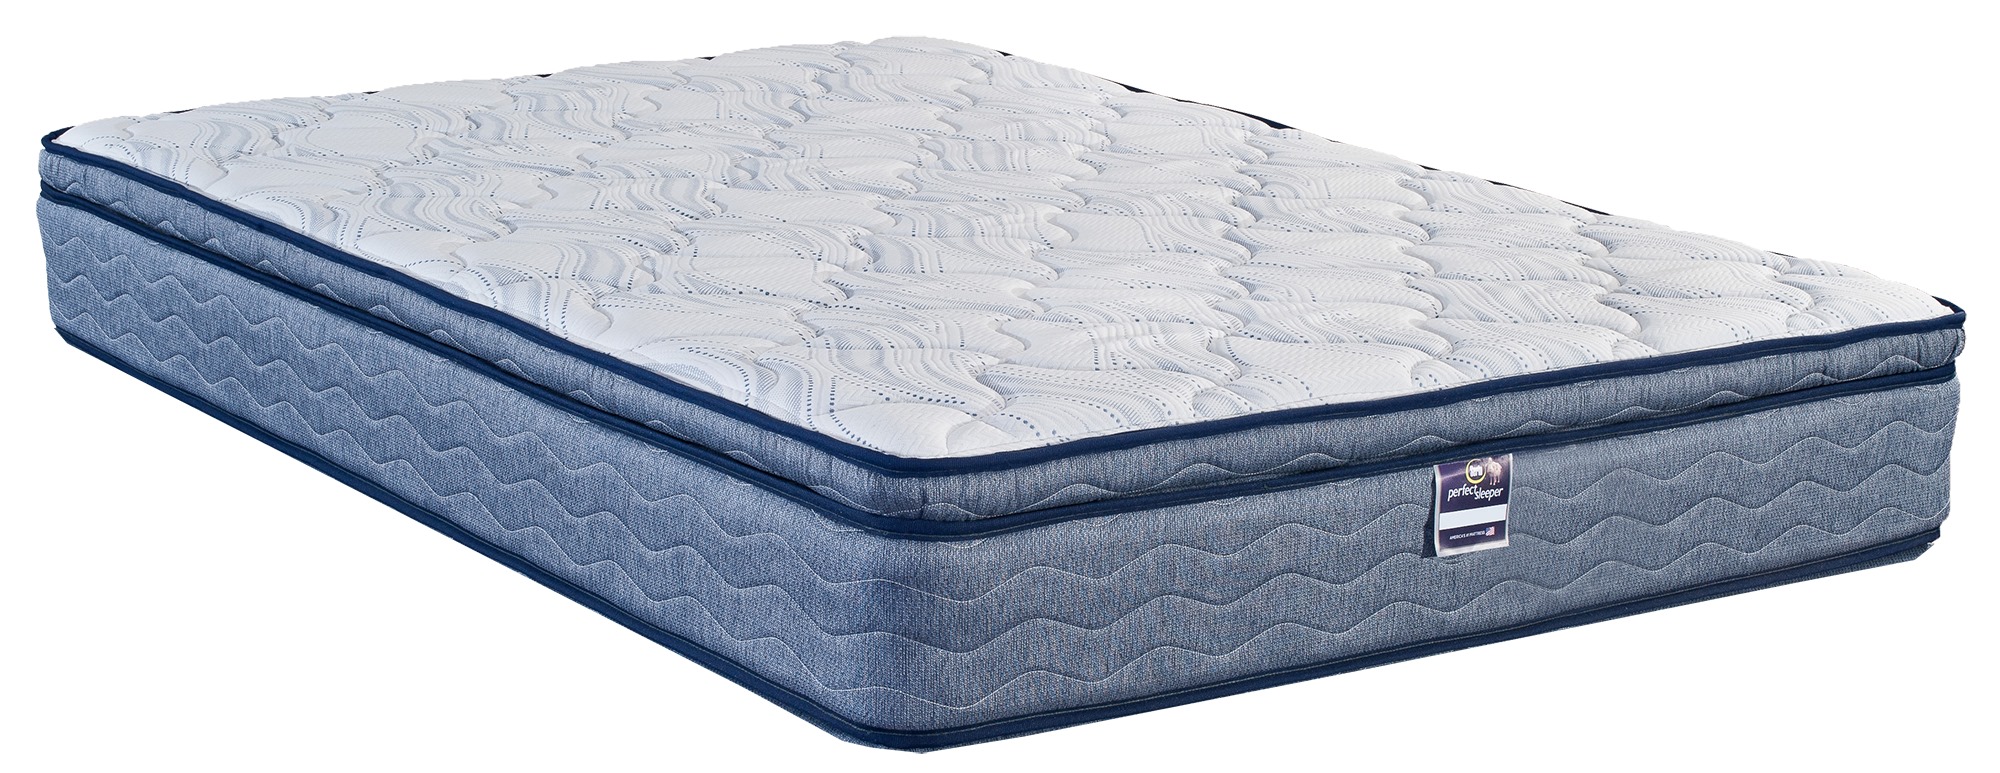 Elite Pillow Top Mattress 2243, King Bed Pillow Top